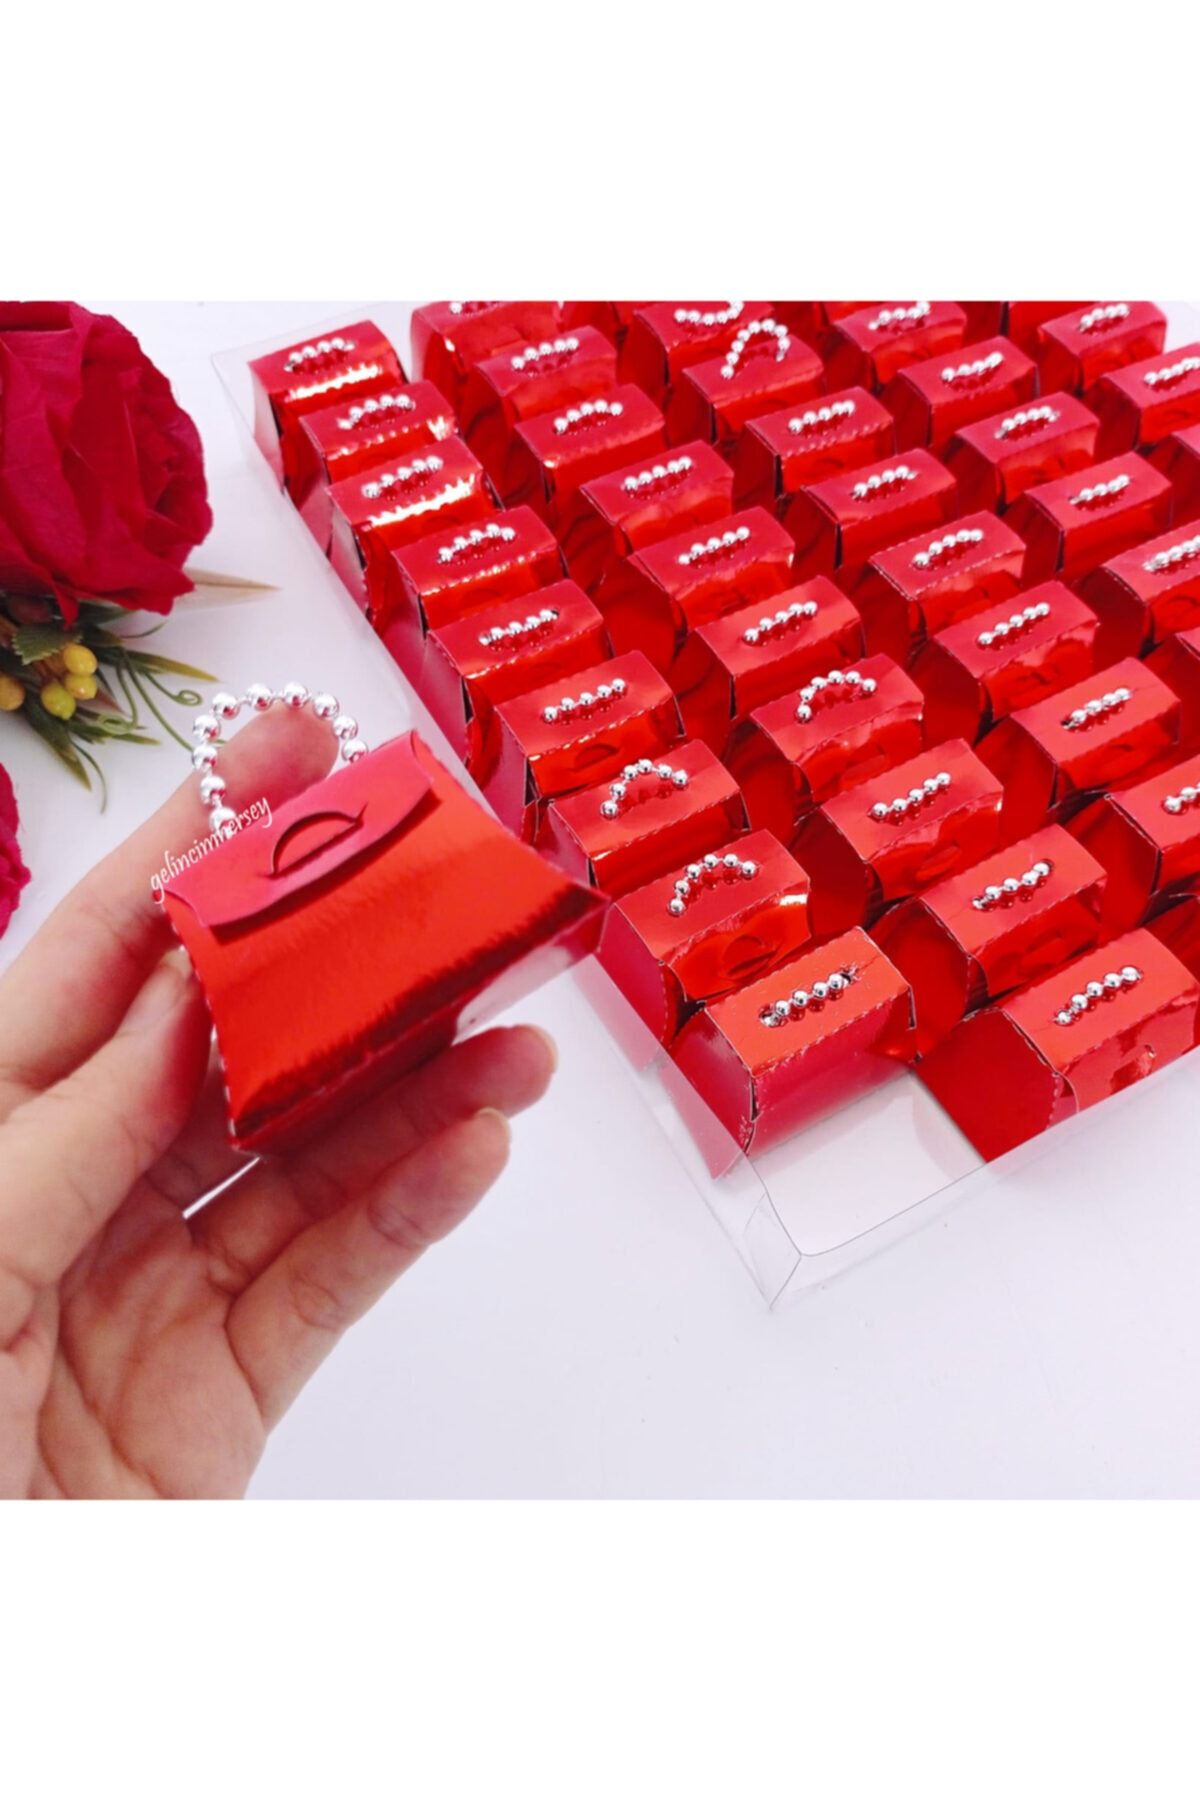 Gelincimherşey Kırmızı 50’li Mini Çanta Şeklinde Boncuklu Ambalajlı Hediyelik Kutu Kına